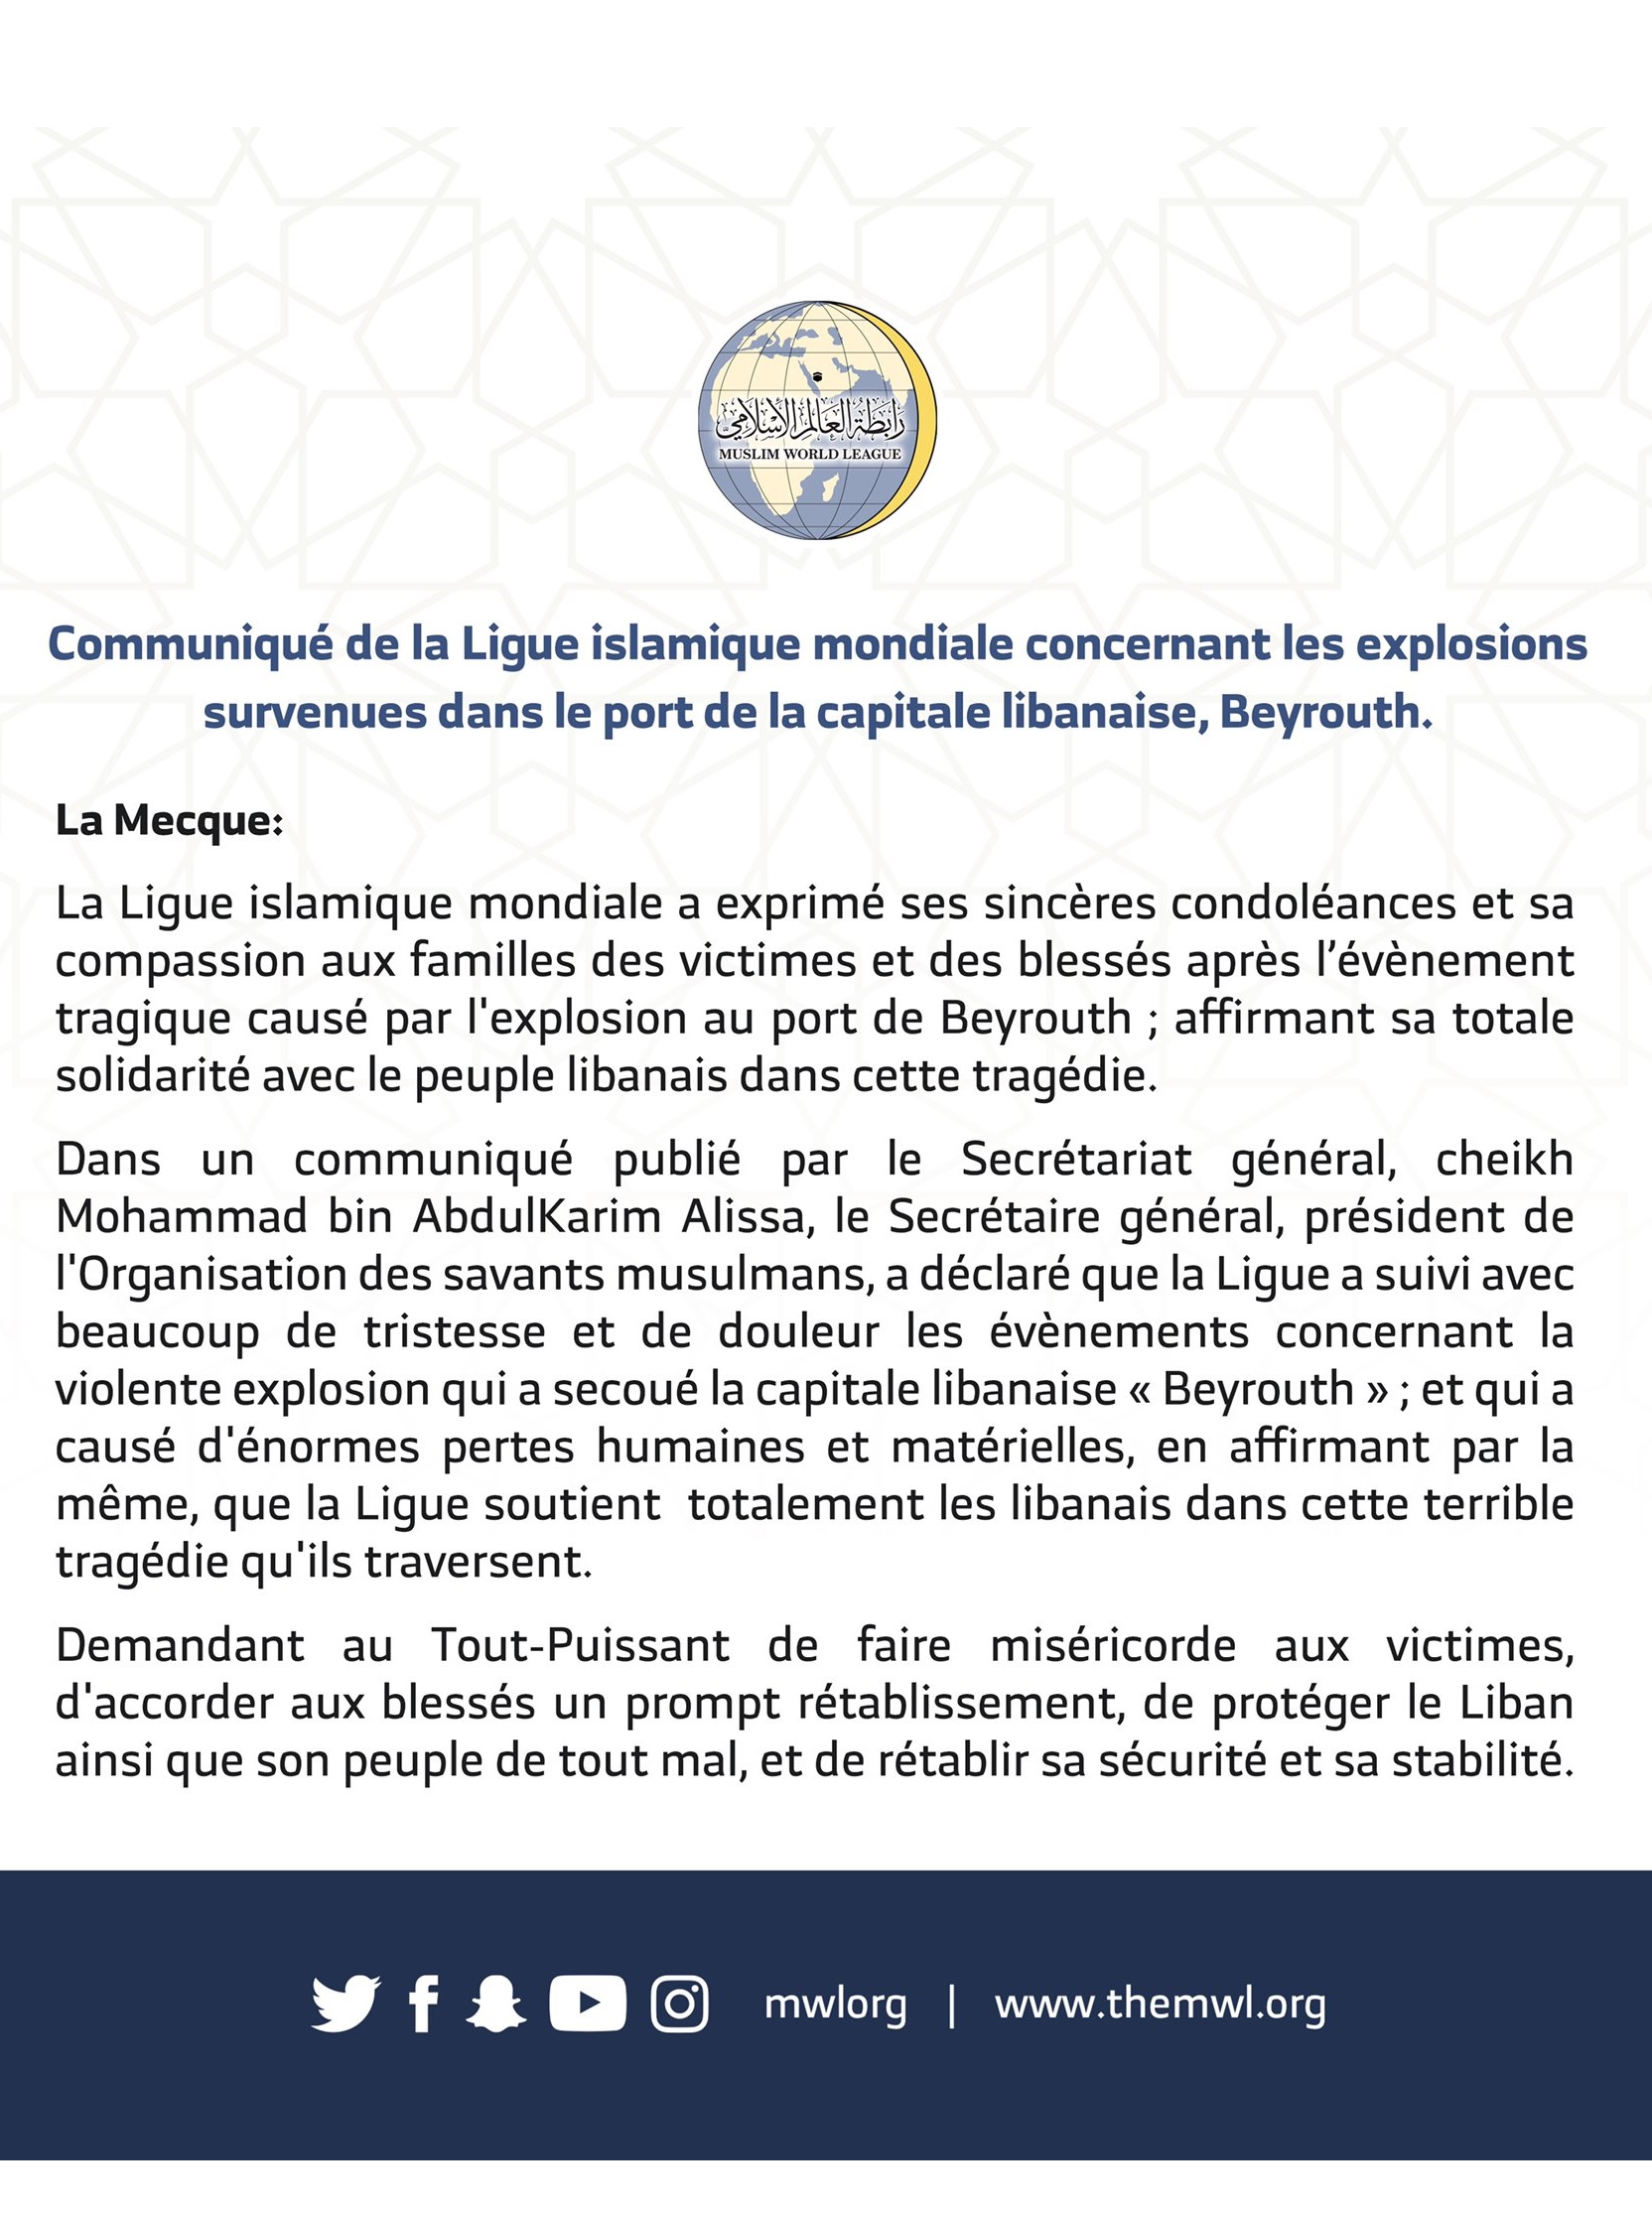 Communiqué de la Ligue Islamique Mondiale sur l’explosion au port de Beyrouth